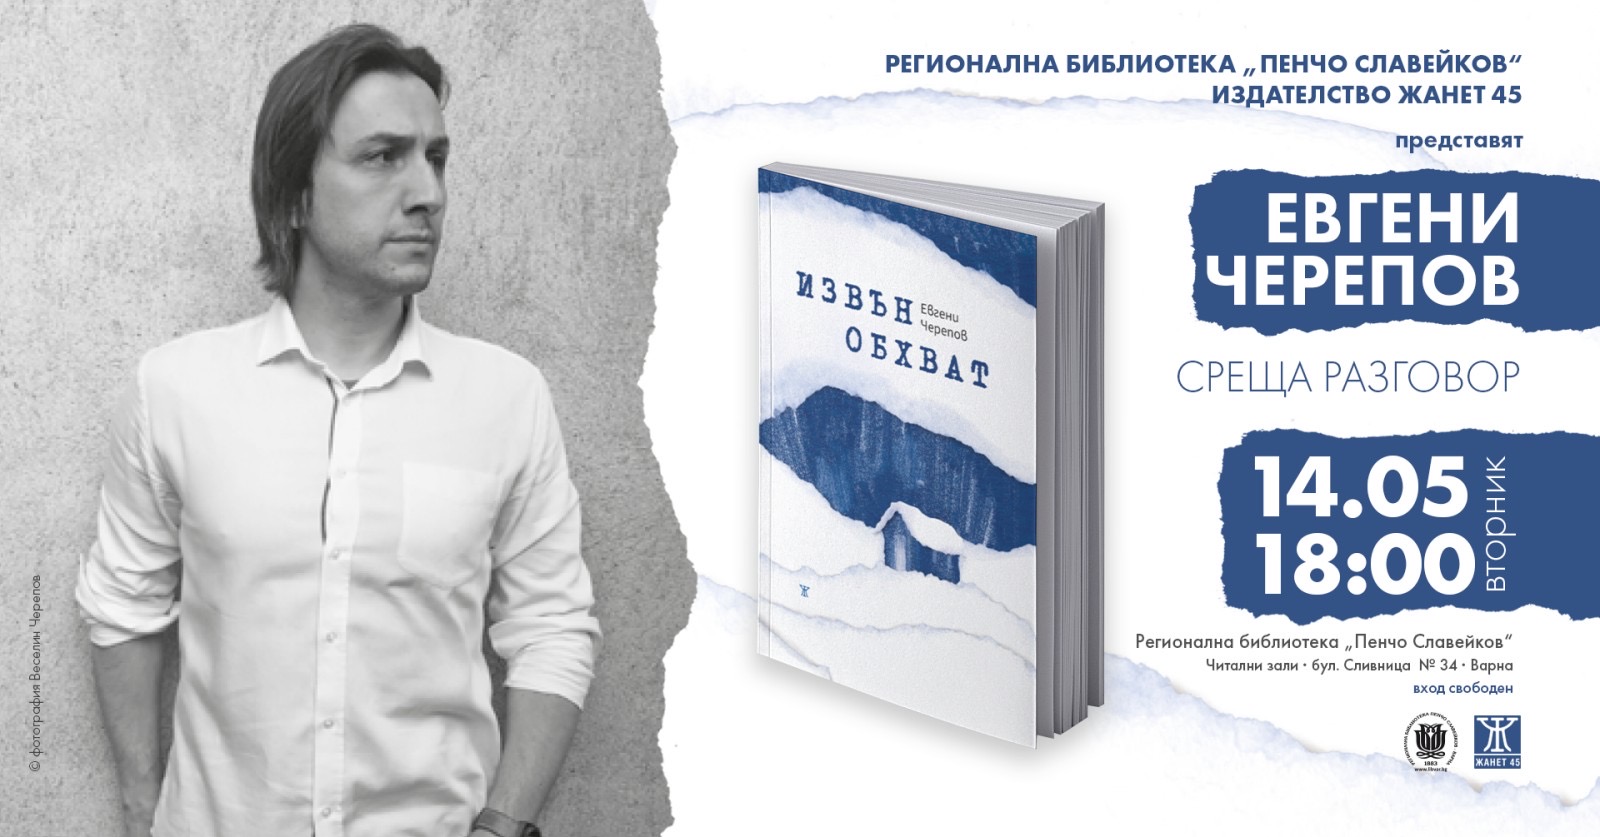 Евгени Черепов и премиера на новия му роман „Извън обхват“ във Варна